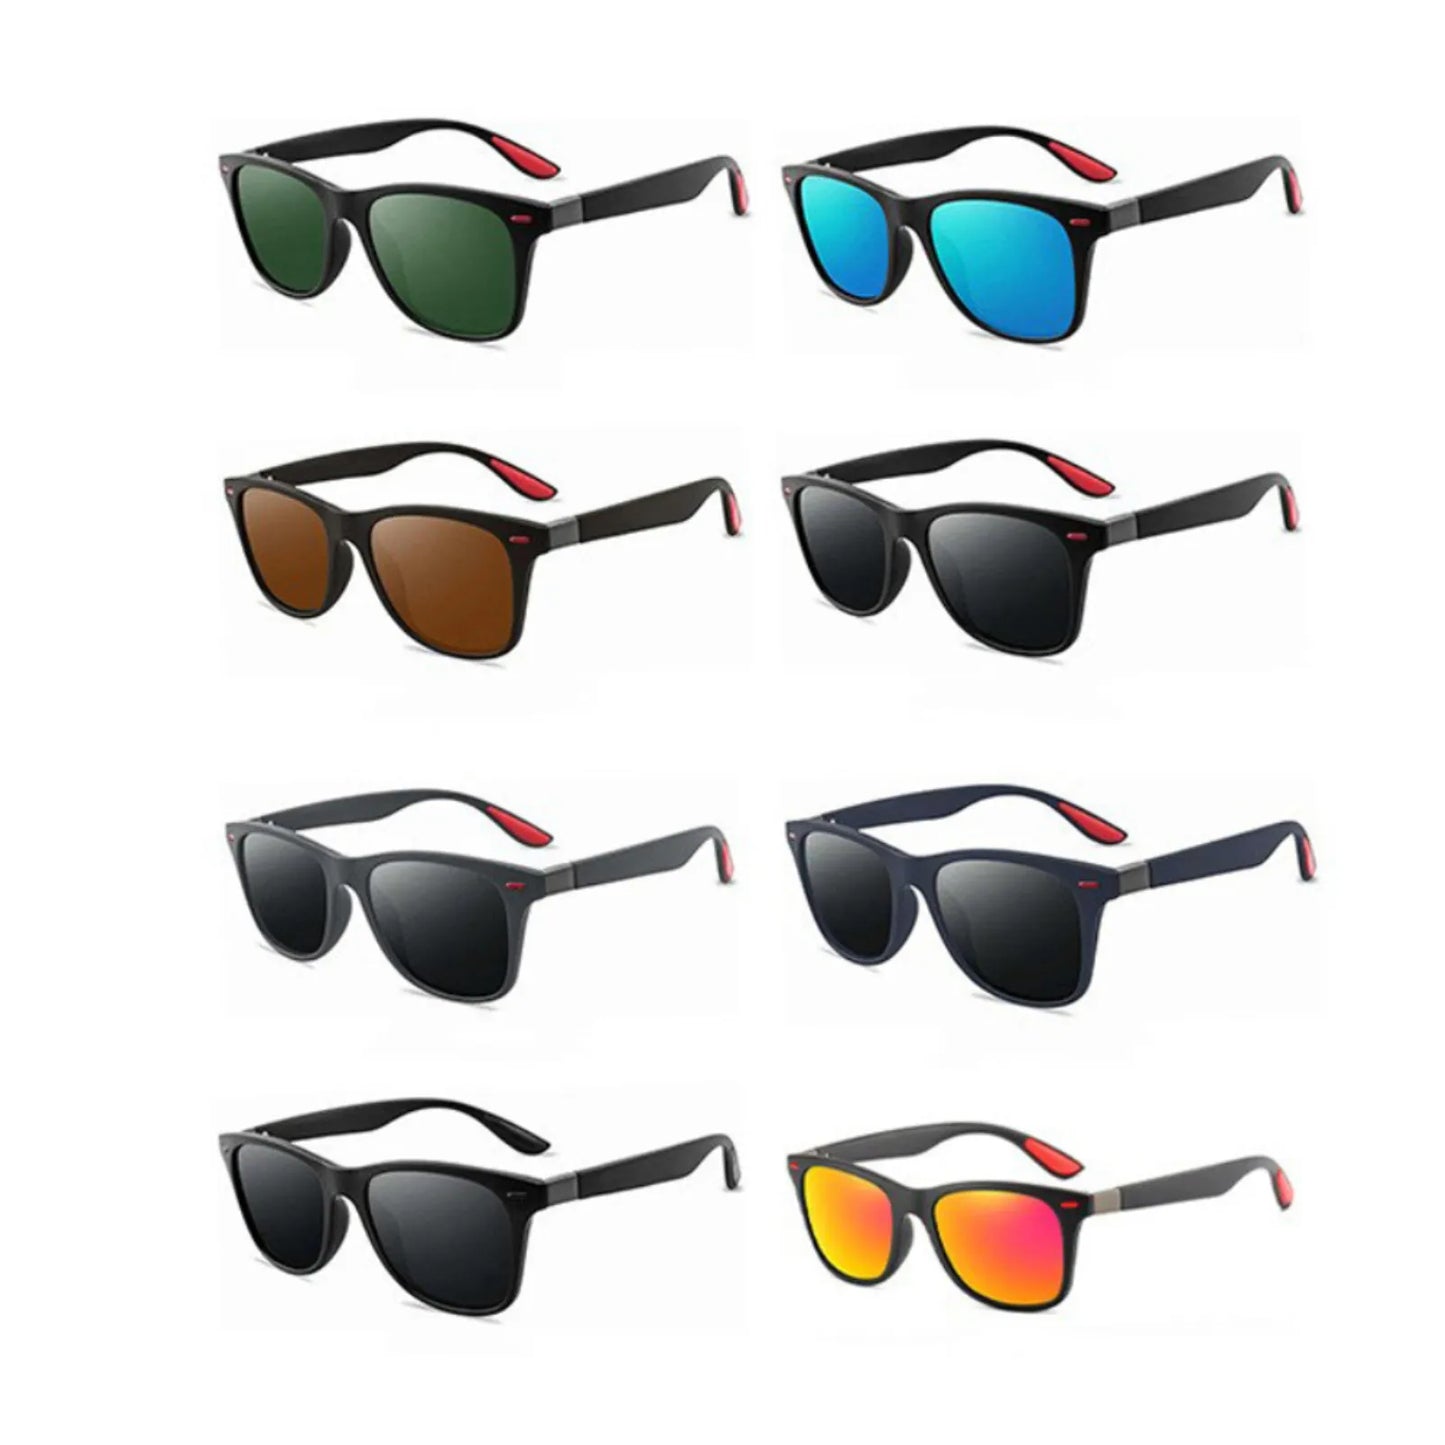 Mode klassische polarisierte Sonnenbrille Männer Frauen Square Sonnenbrille Anti-Blend-Goggle-Reisebericht Fischerei Radsport Sonnenbrille UV400